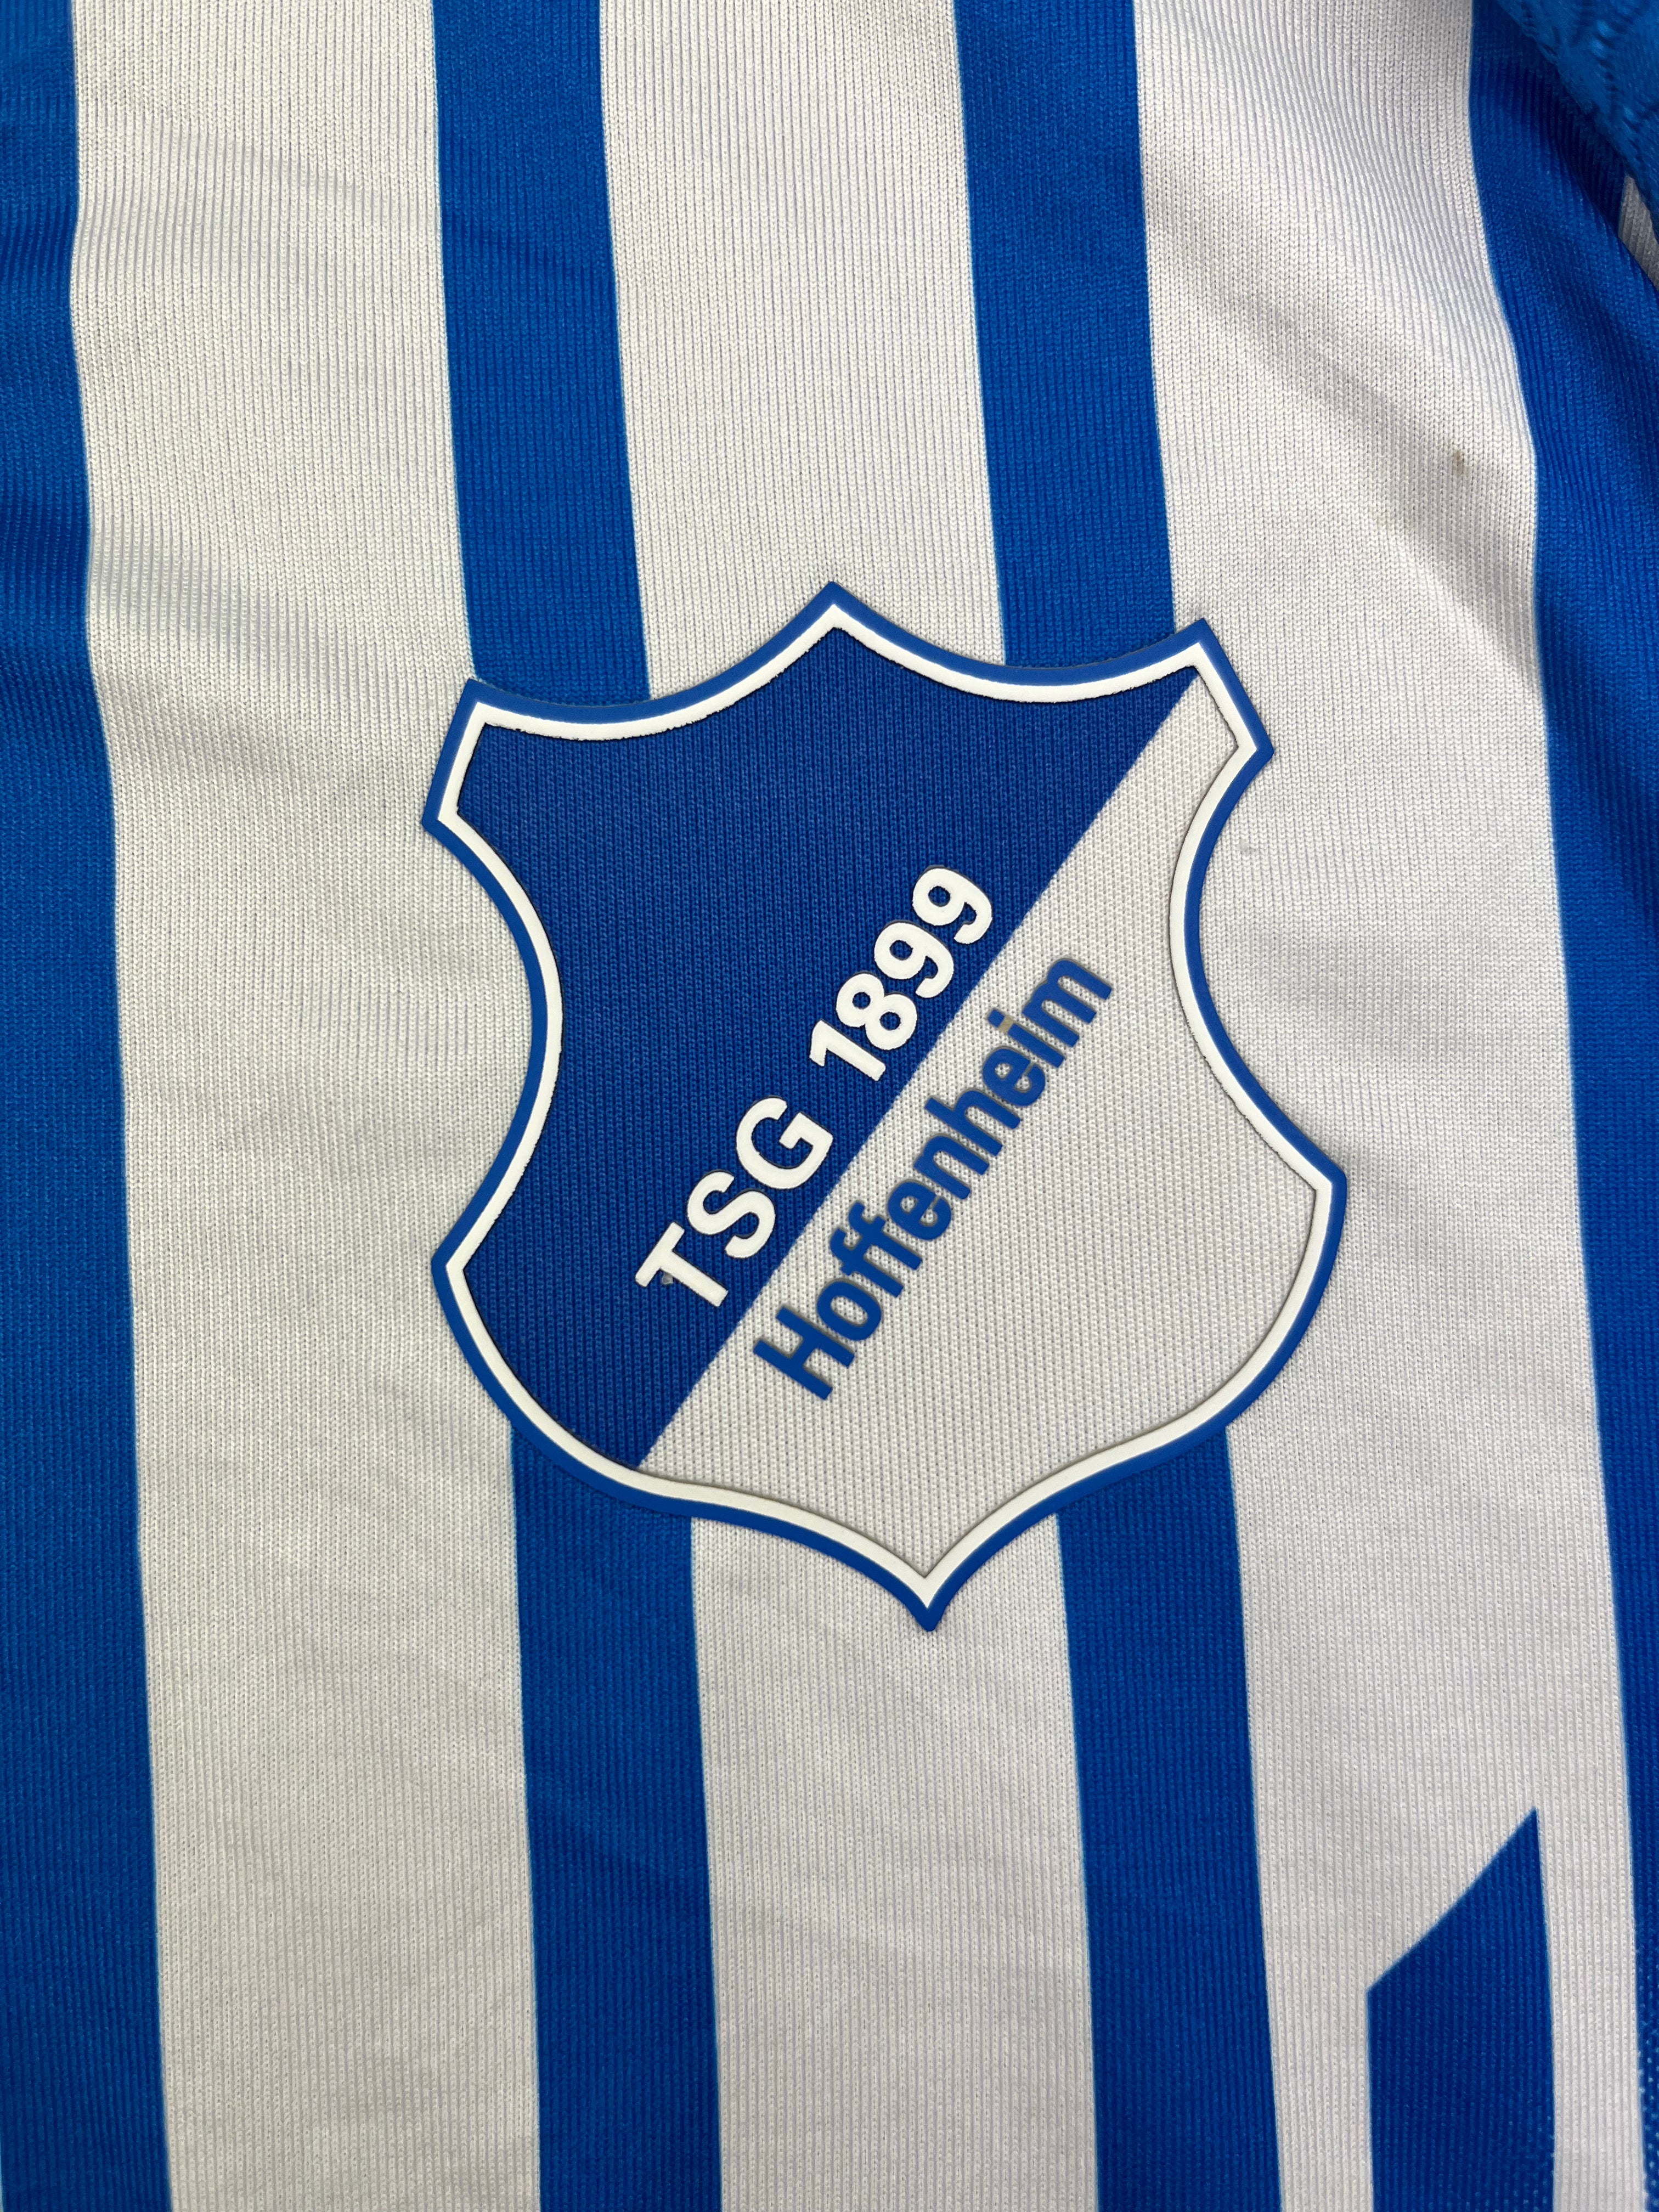 Camiseta de local del Hoffenheim 2015/16 (M) 8.5/10